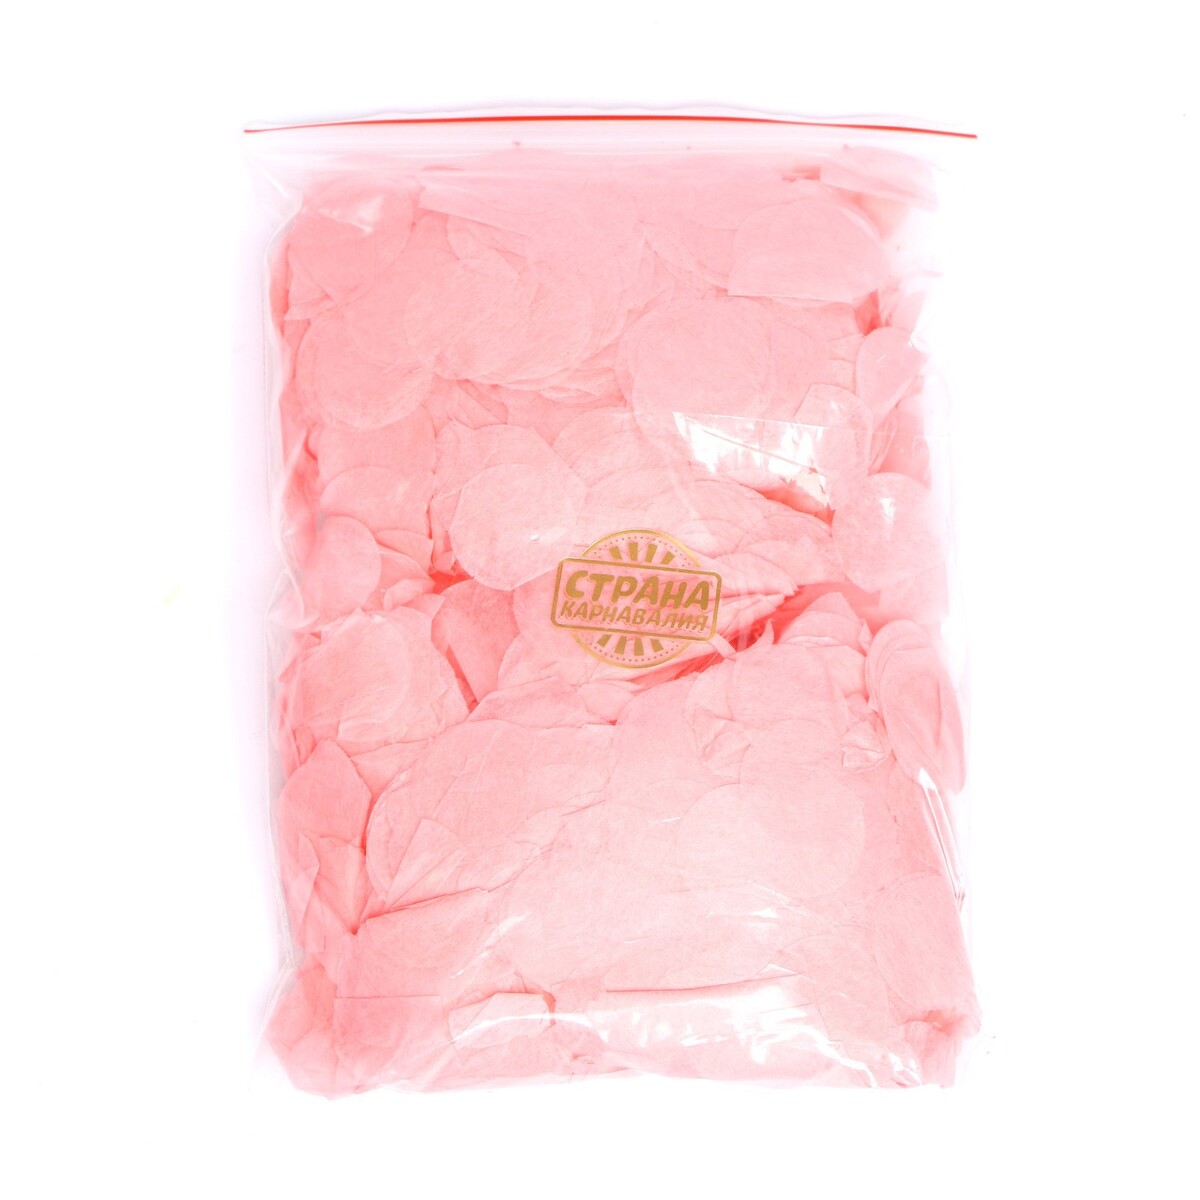 Наполнитель для шара, конфетти розовое, 100 г, 2,5 см поделка аромафабрика фруктовое конфетти